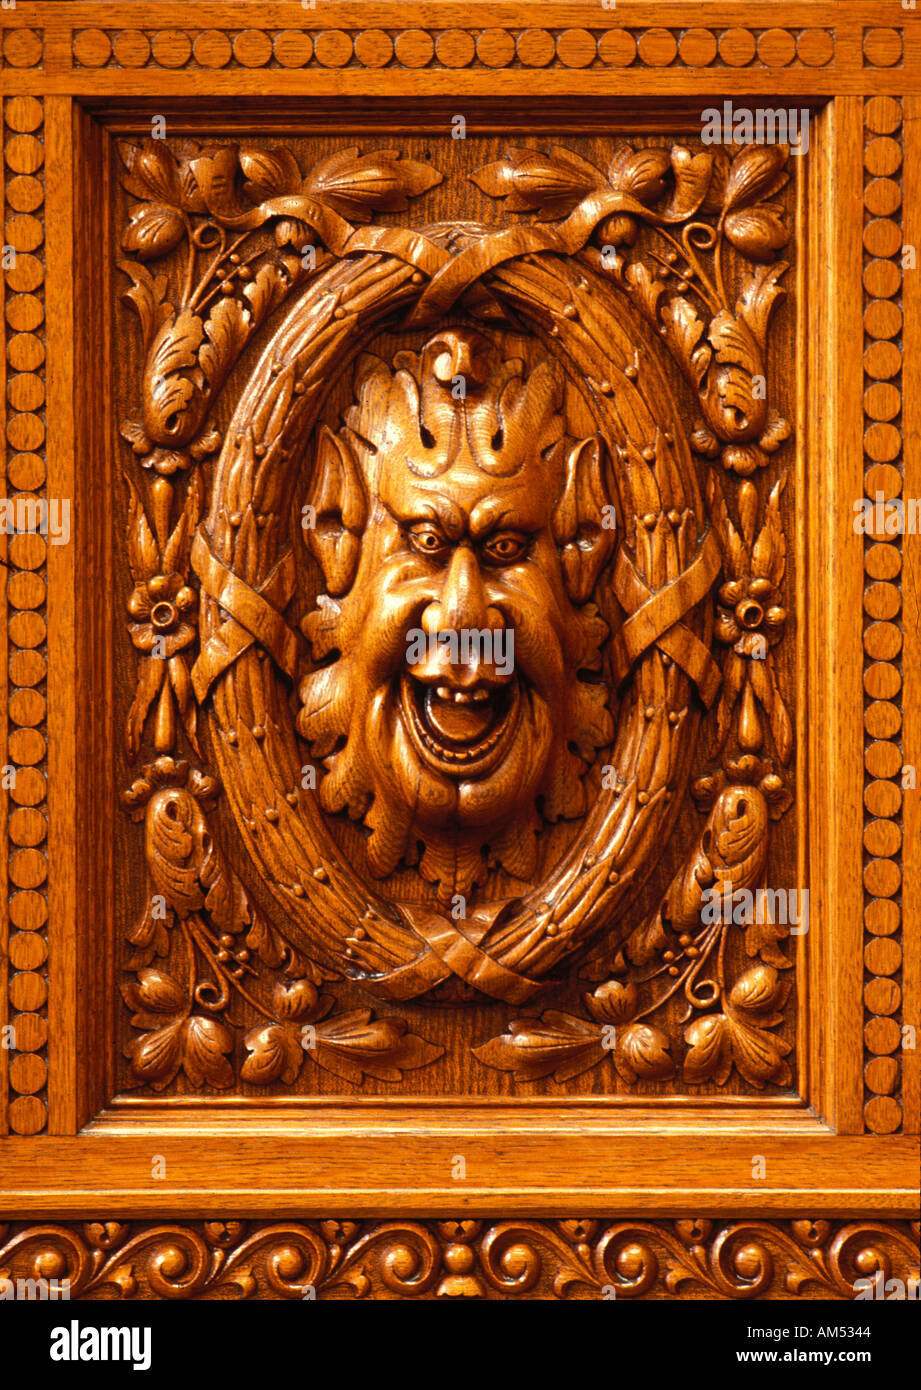 Lustige und humorvolle aus Holz geschnitzten Gesicht Bas Relief Holzplatte Stockfoto